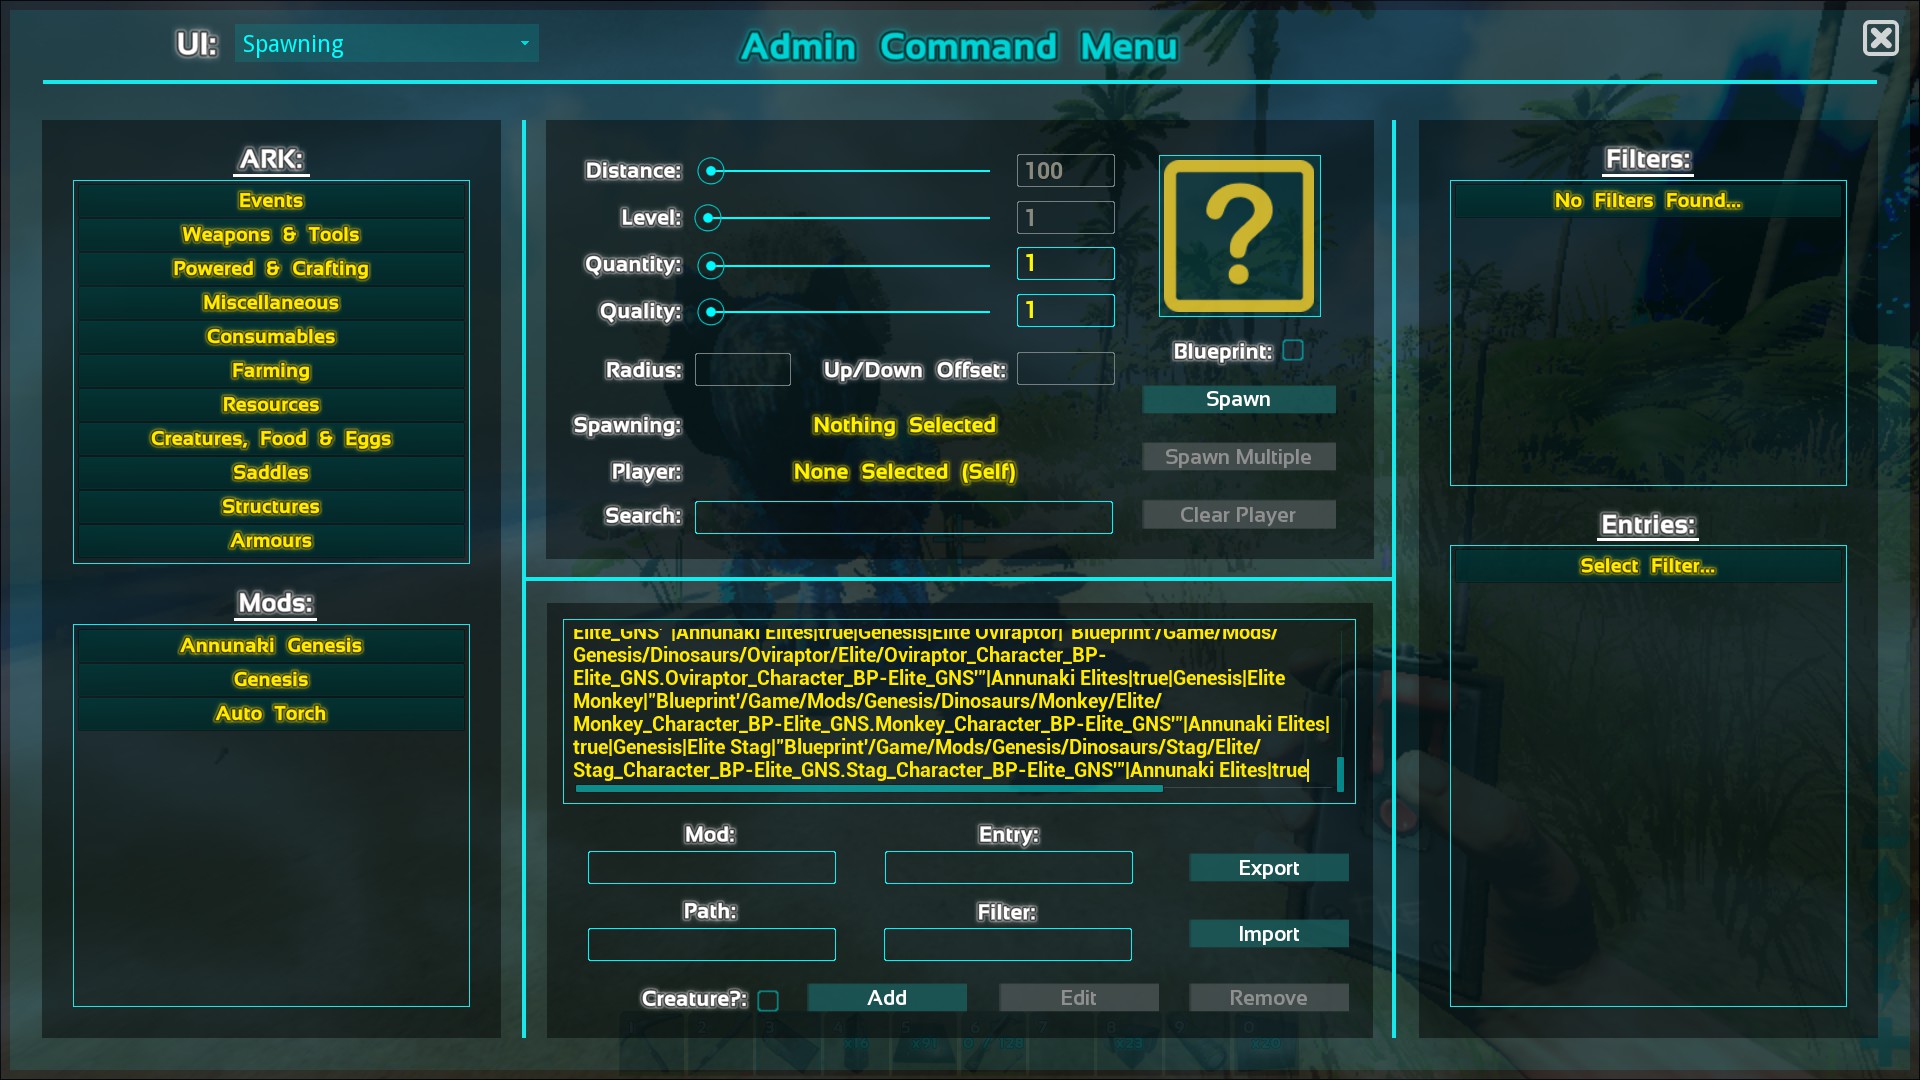 Steam Community Guide Acm Admin Command Menu Mod Bulk Import Guide